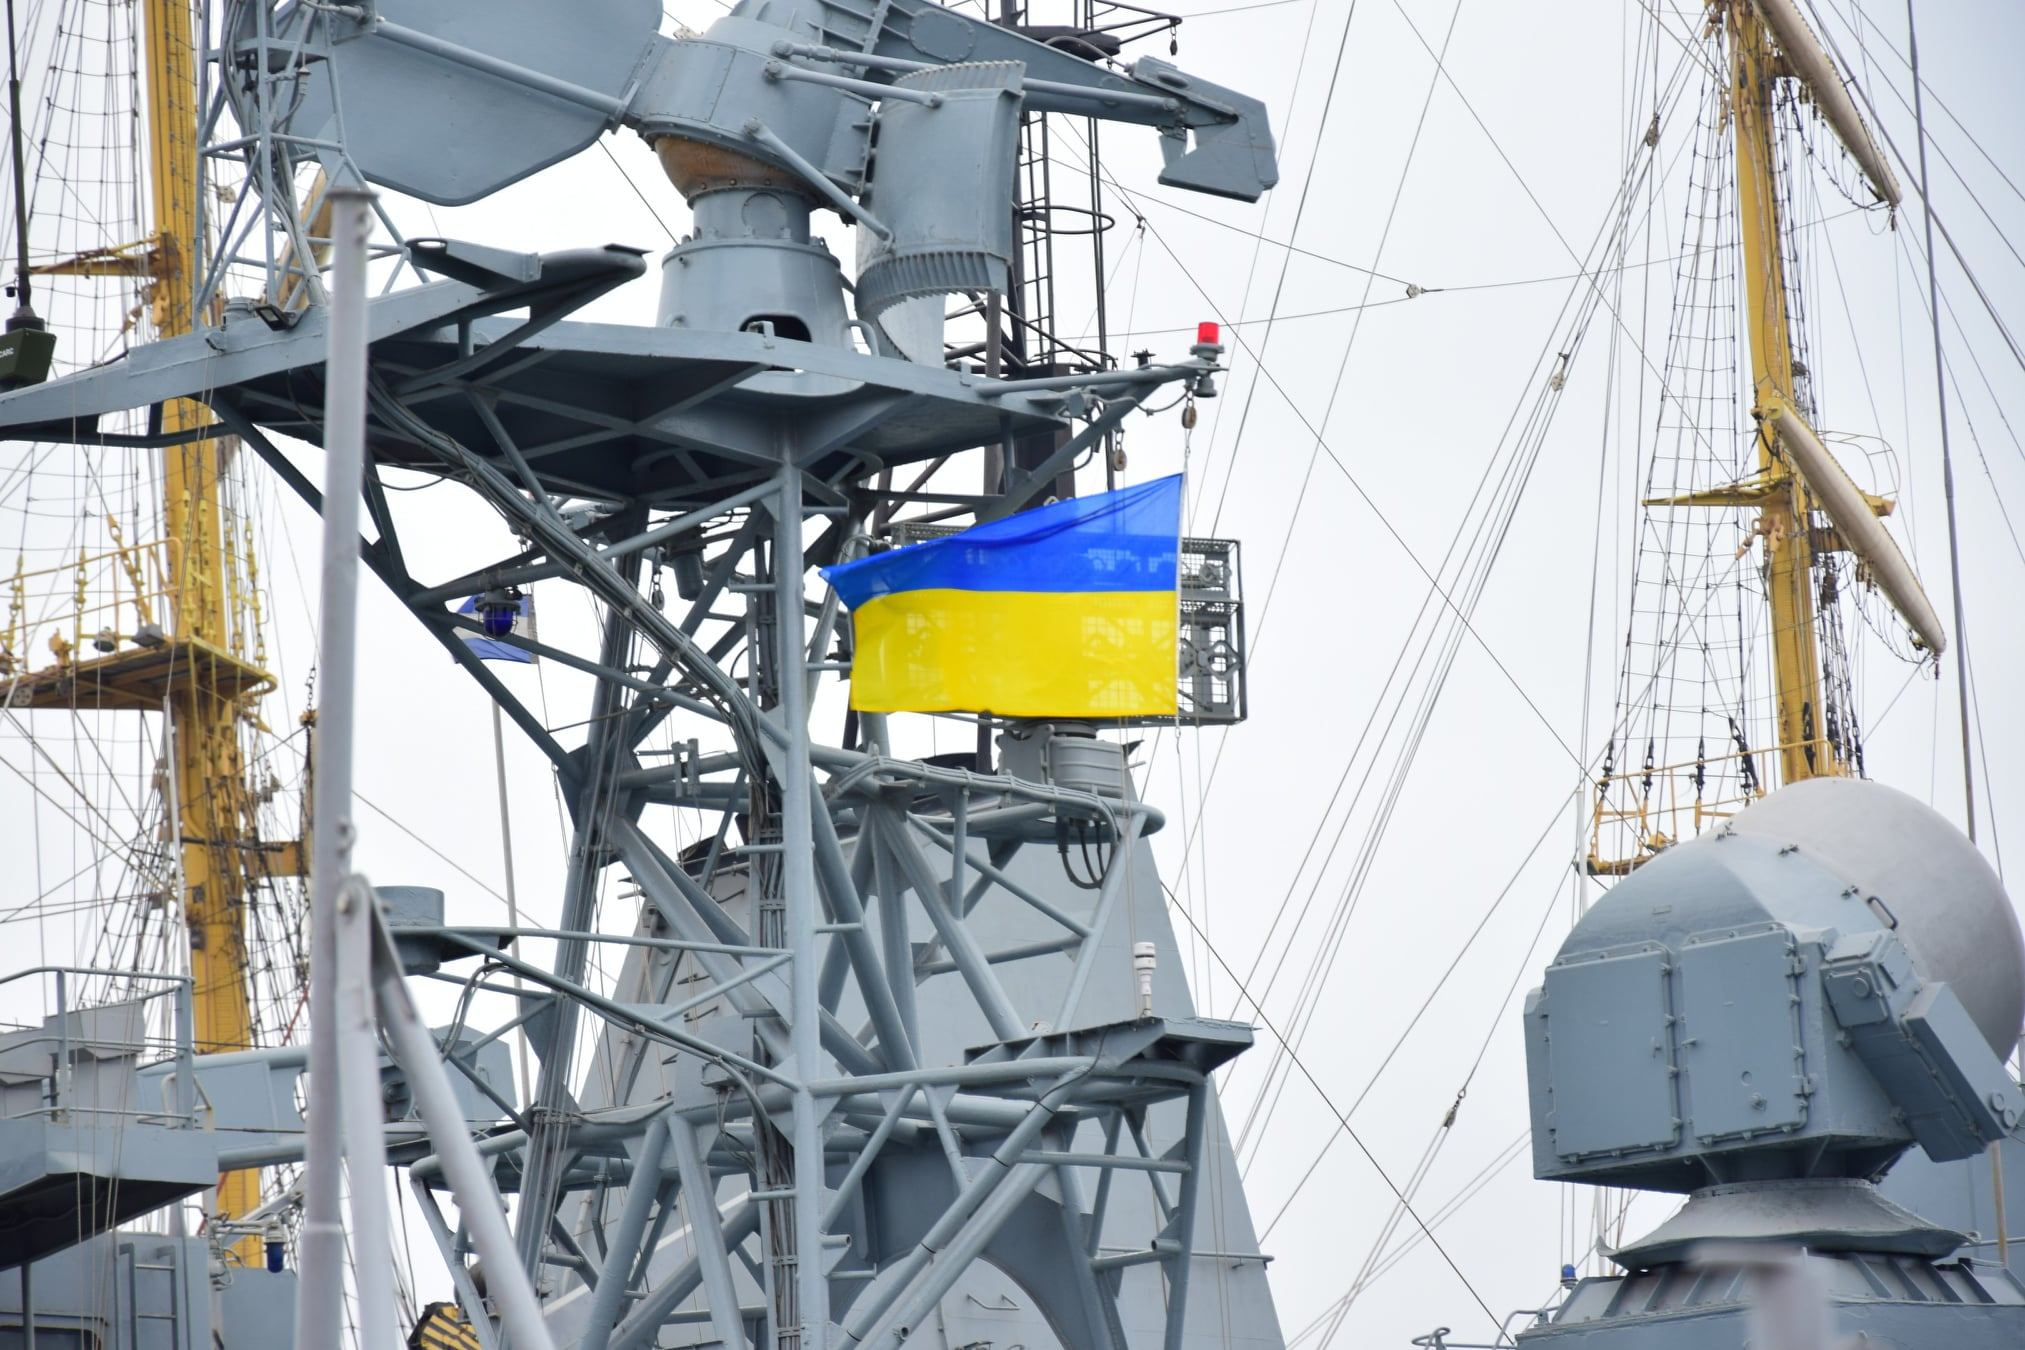 Украинская армия дополнительно получит почти 68 миллиардов гривен на усиление флота